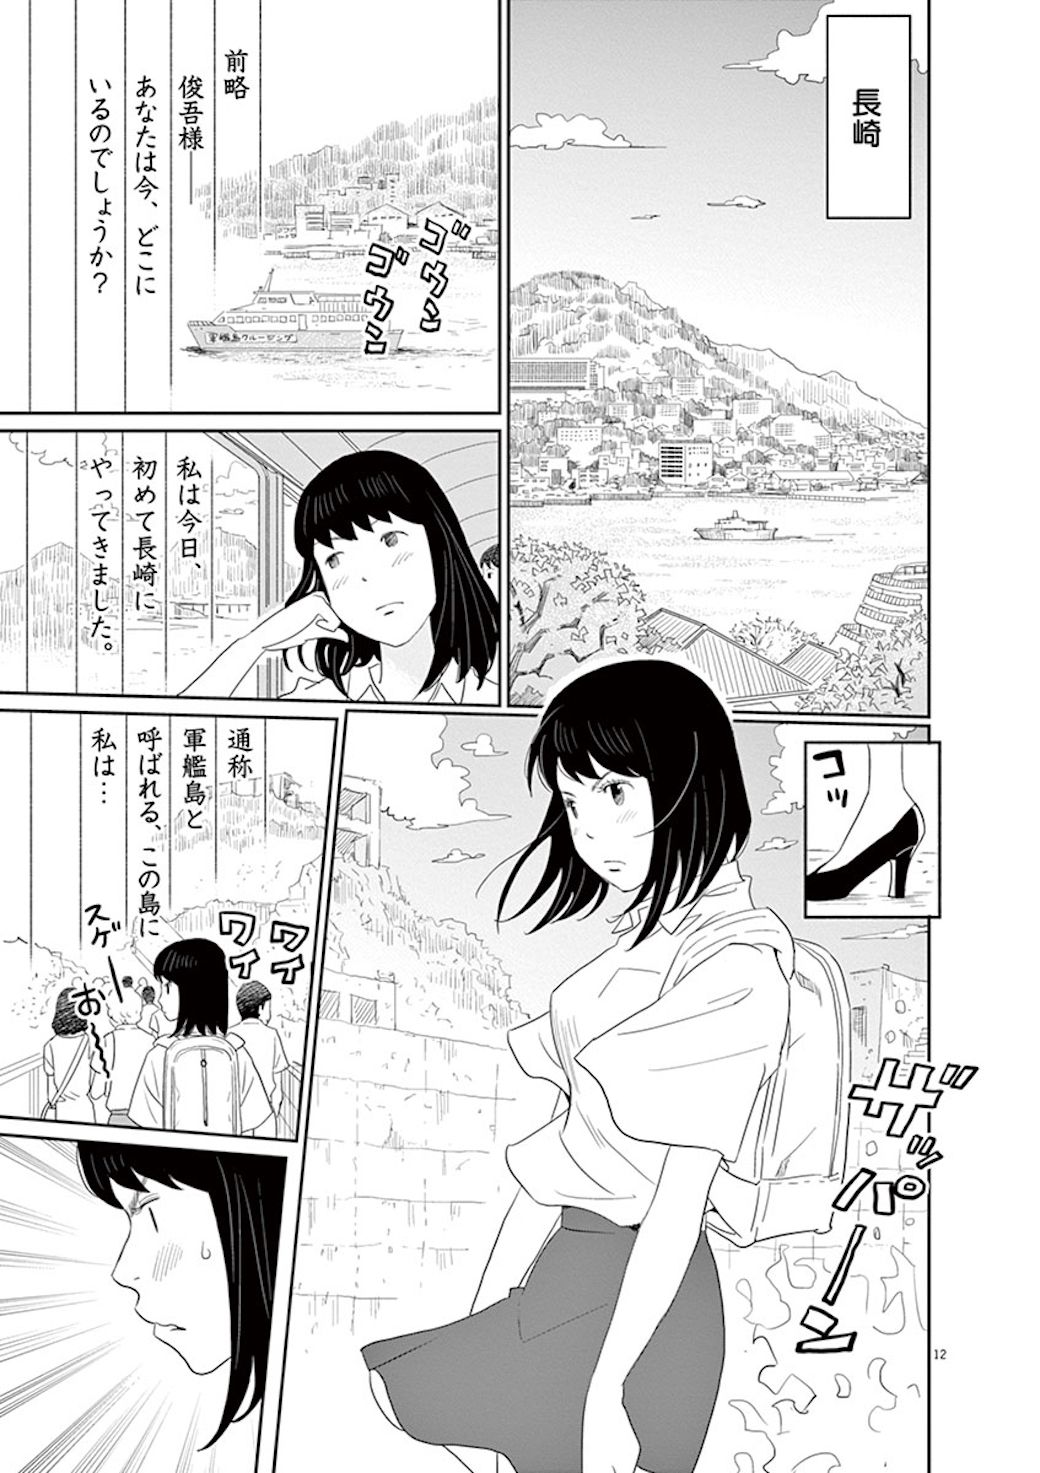 漫画 大失恋した女 が長崎の石畳を全力疾走する理由 忘却のサチコ 東洋経済オンライン 社会をよくする経済ニュース